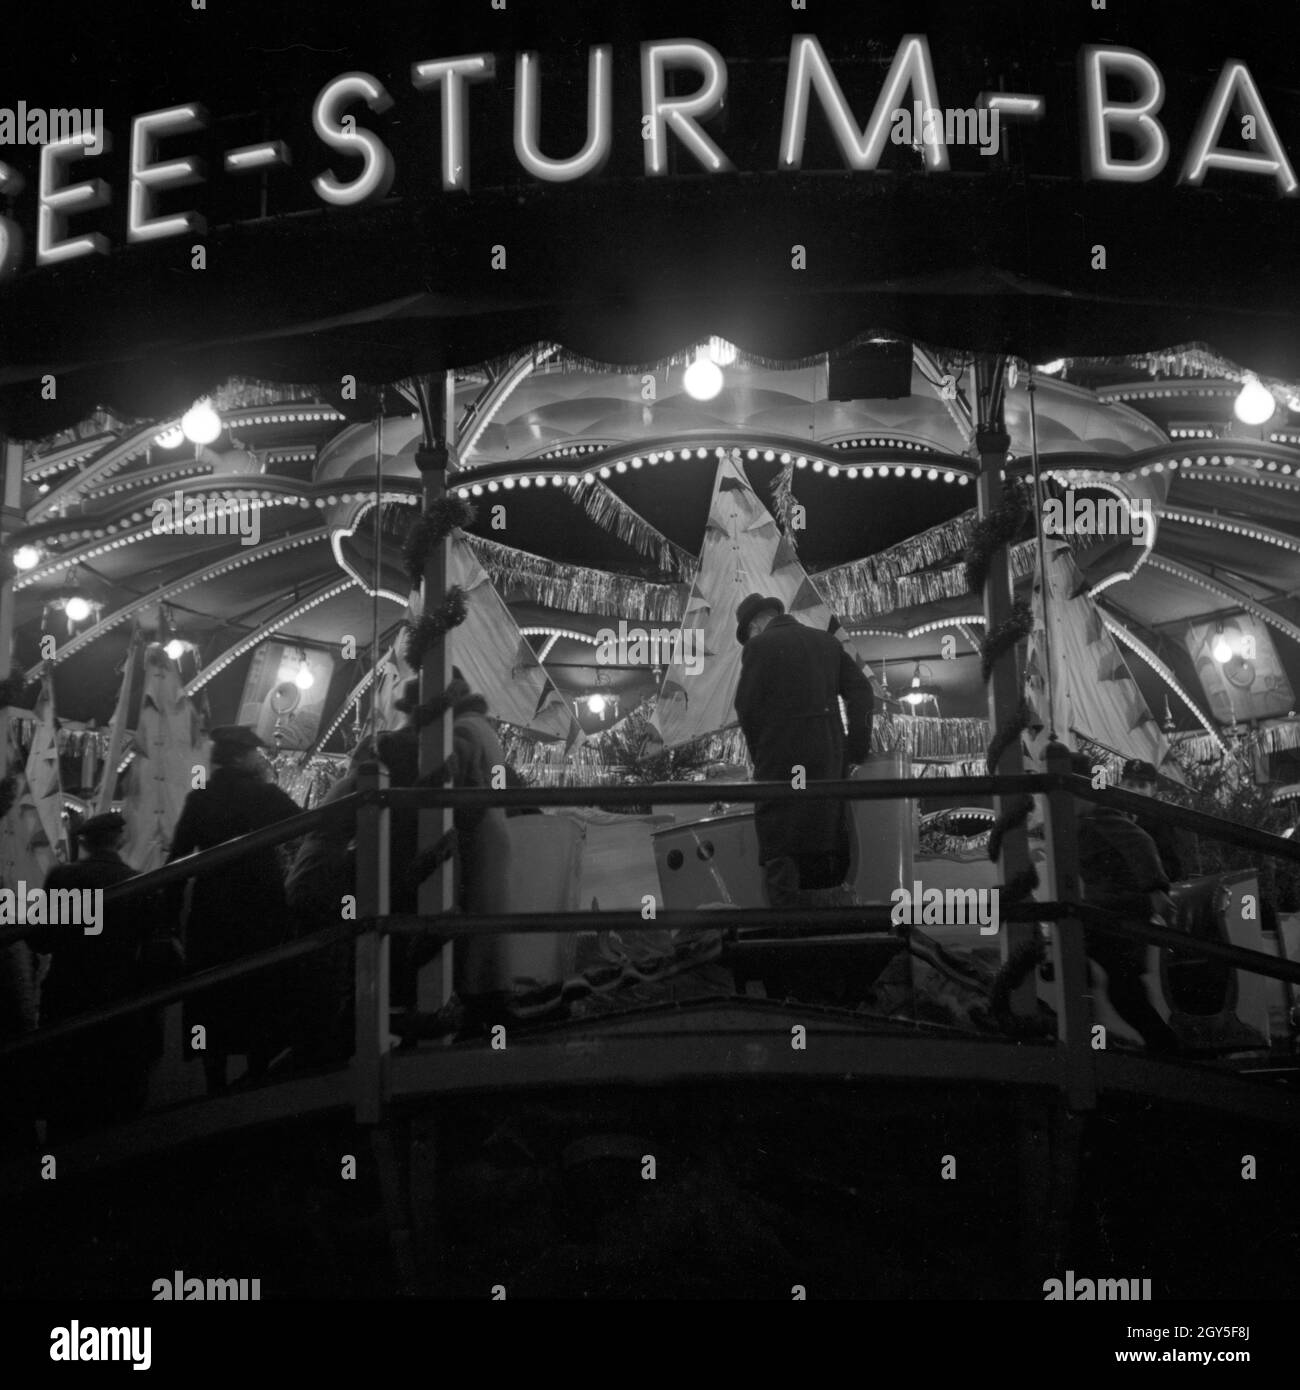 Die See Sturm Bahn, ein Fahrgeschäft auf dem Weihnachtsmarkt, Deutschland 1930er Jahre. The sea storm ride, a fairground attraction at the Berlin christmas market, Germany 1930s. Stock Photo